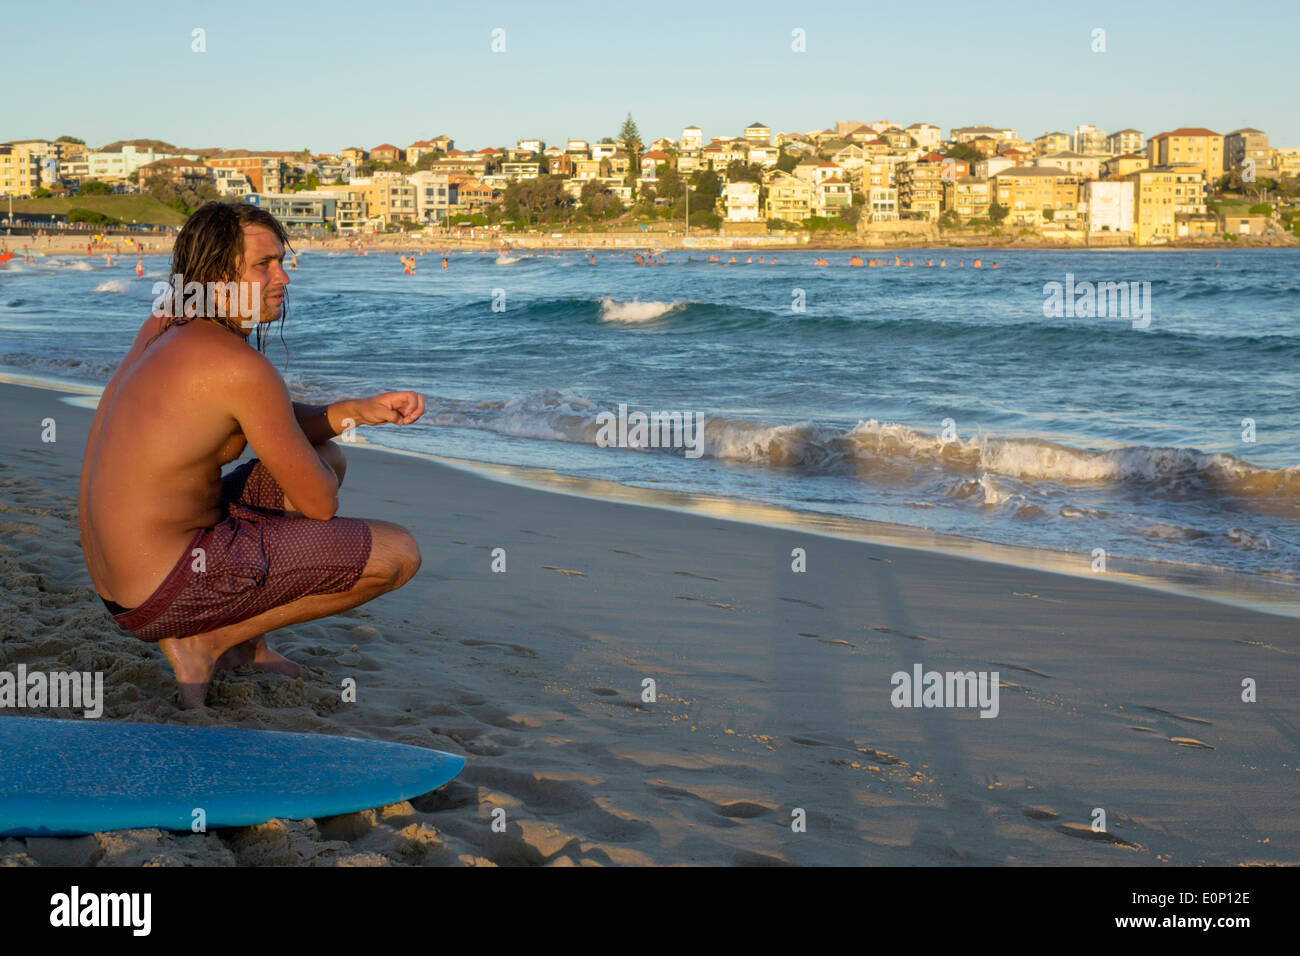 Sydney Australien, Bondi Beach, Pazifischer Ozean, Surfen, Wellen, Sand, öffentlich, North Bondi, Surfer, Männer männlich, Surfbrett, AU140310234 Stockfoto